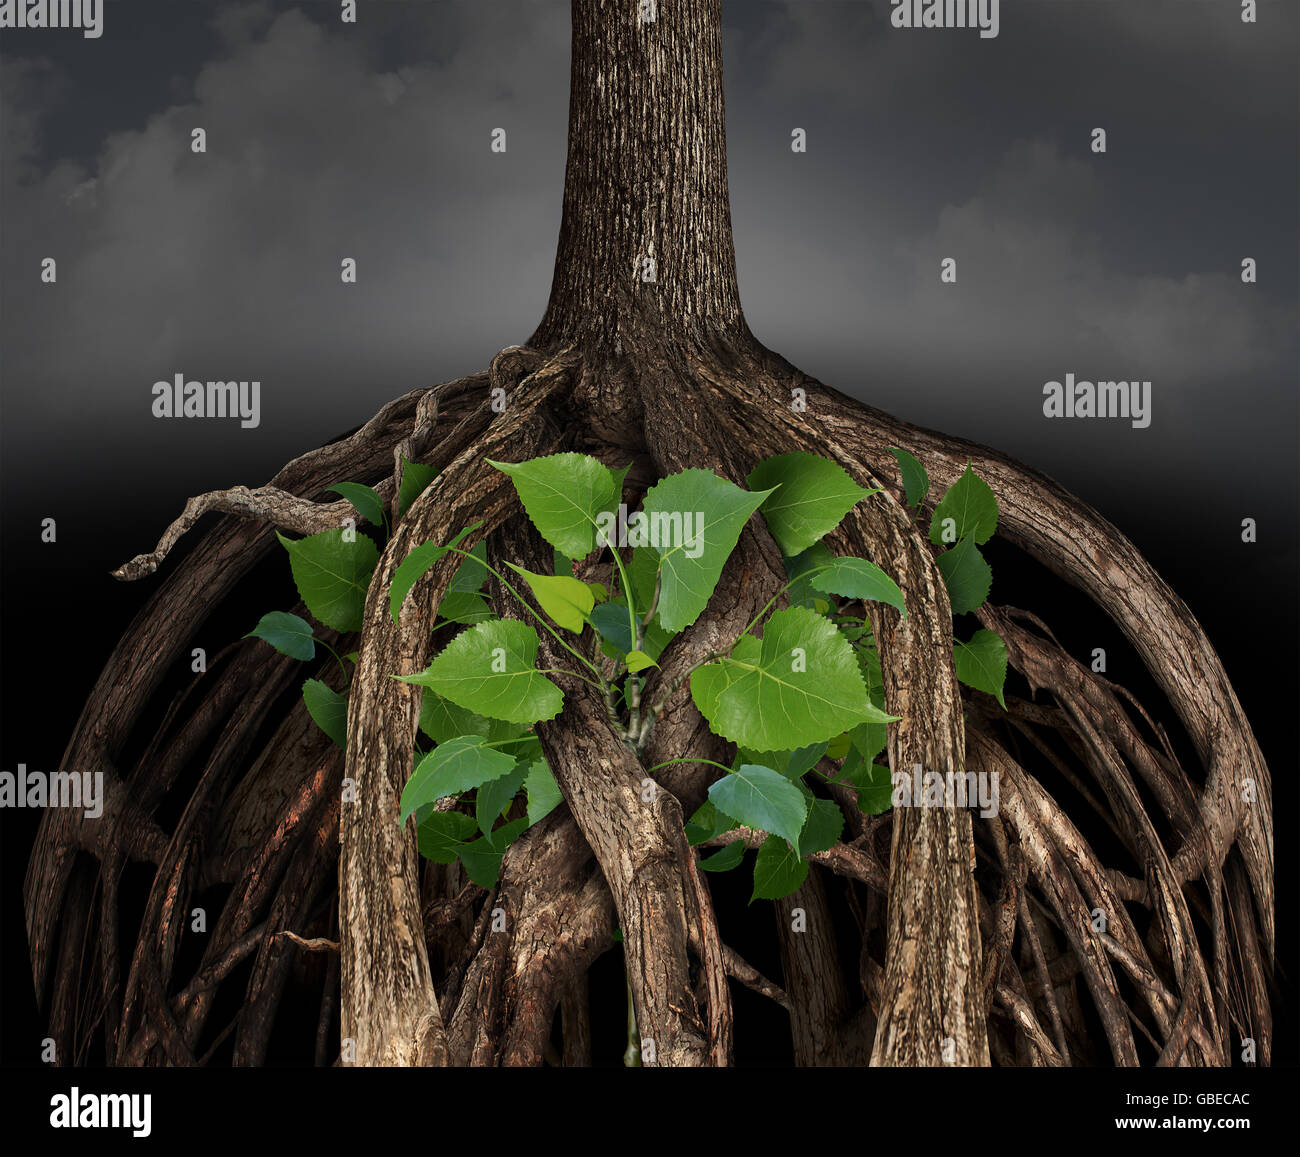 Crecimiento empresarial difícil concepto como un gran árbol raíz obstáculo atrapando un determinado pequeño arbolito verde que representa la idea de la carrera o la vida lucha para prosperar en una situación desafiante. Foto de stock